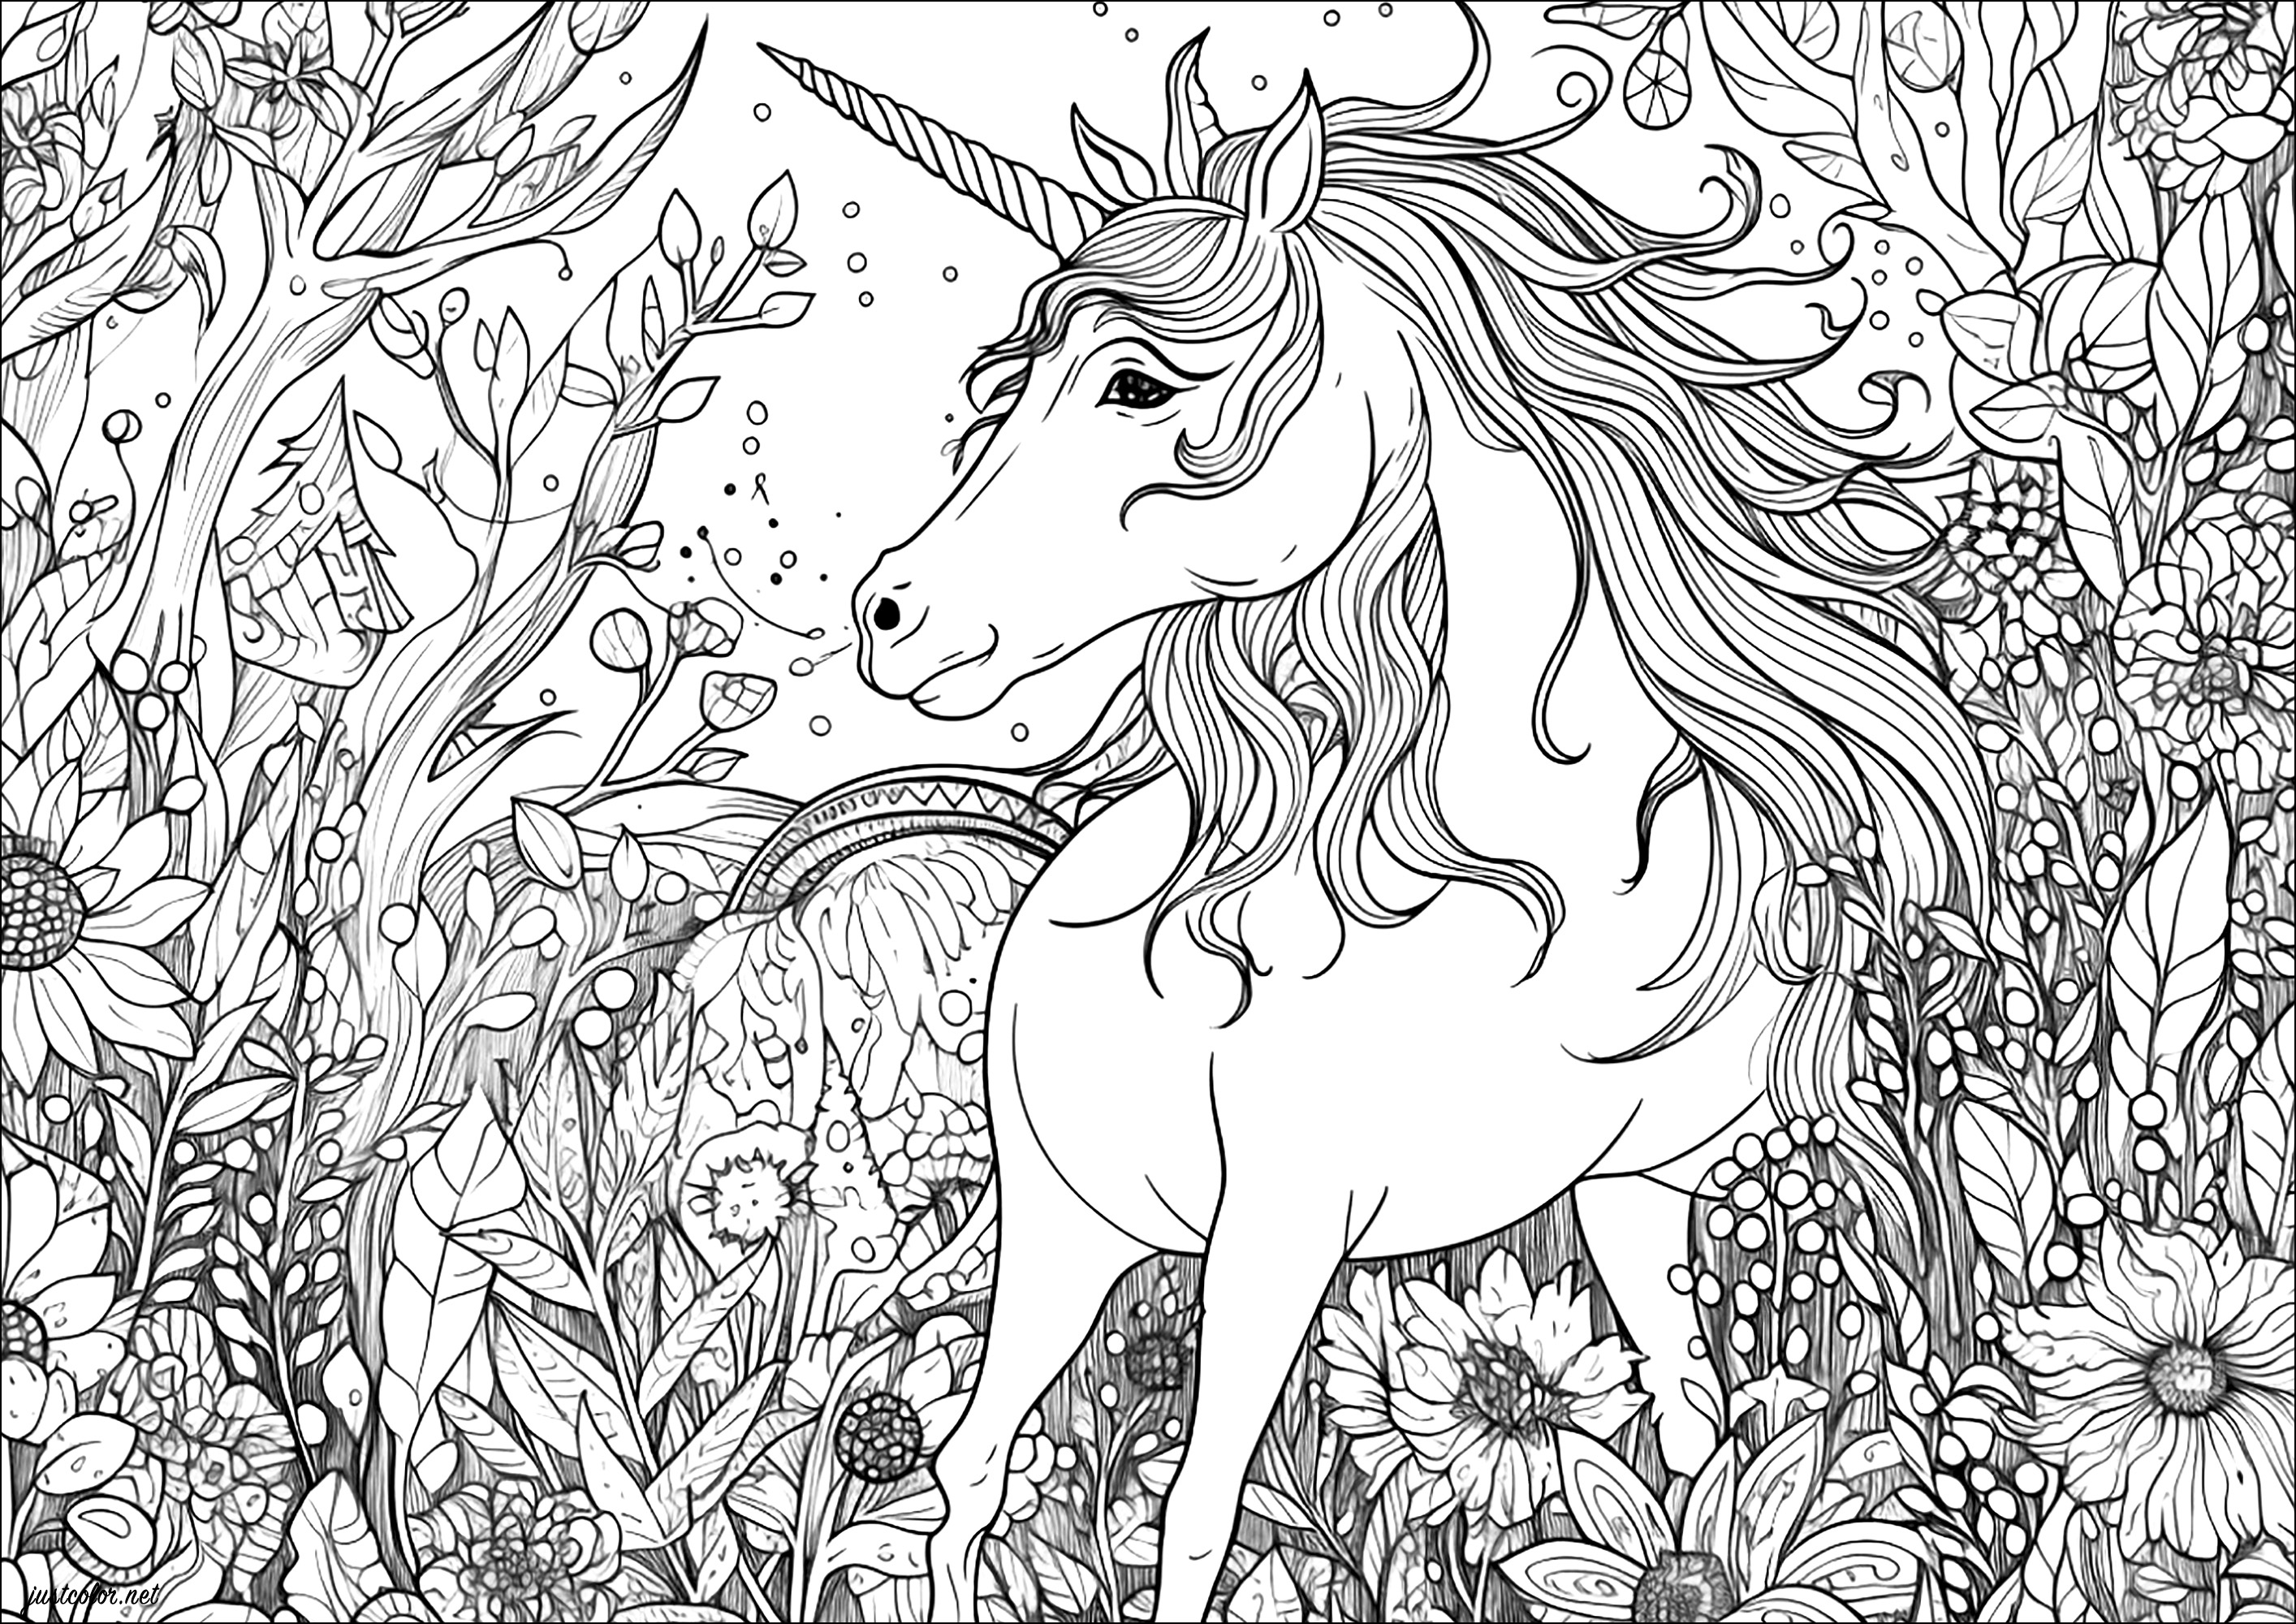 Bonito unicornio en un bosque. Muchos detalles para colorear, para una experiencia mágica de coloreado